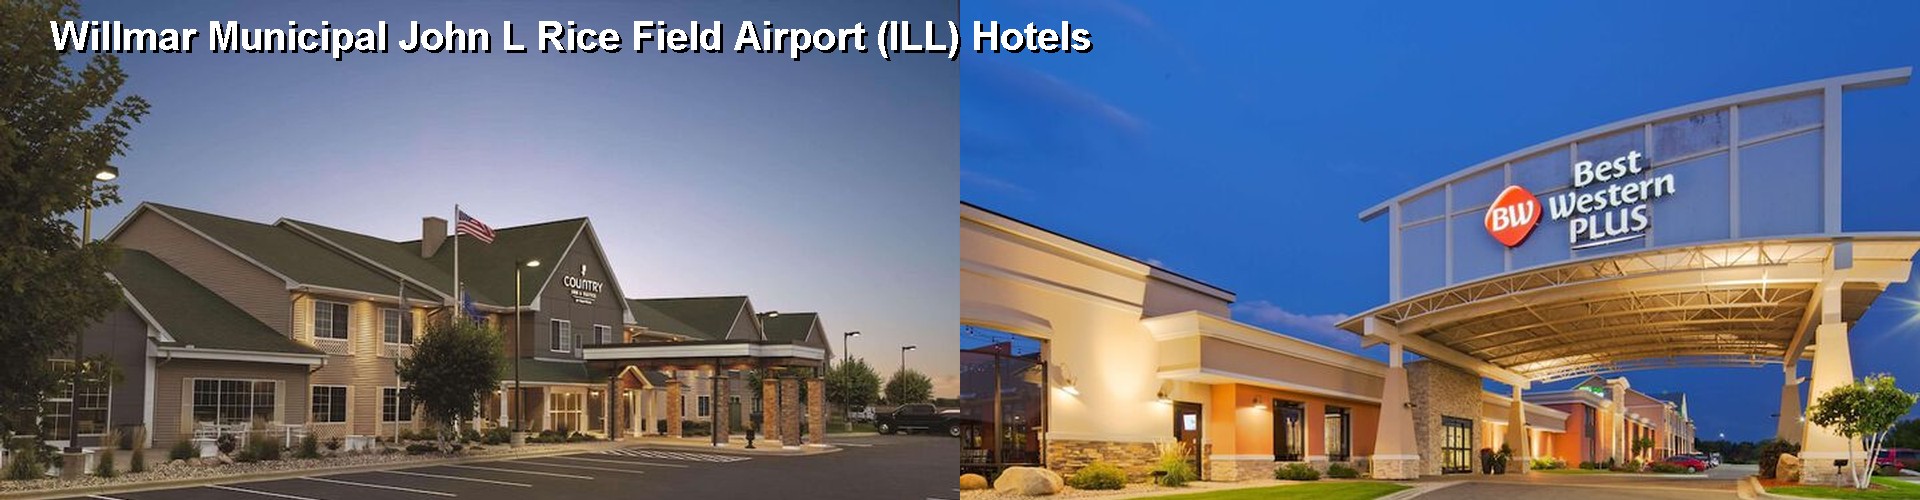 5 Best Hotels near Willmar Municipal John L Rice Field Airport (ILL)